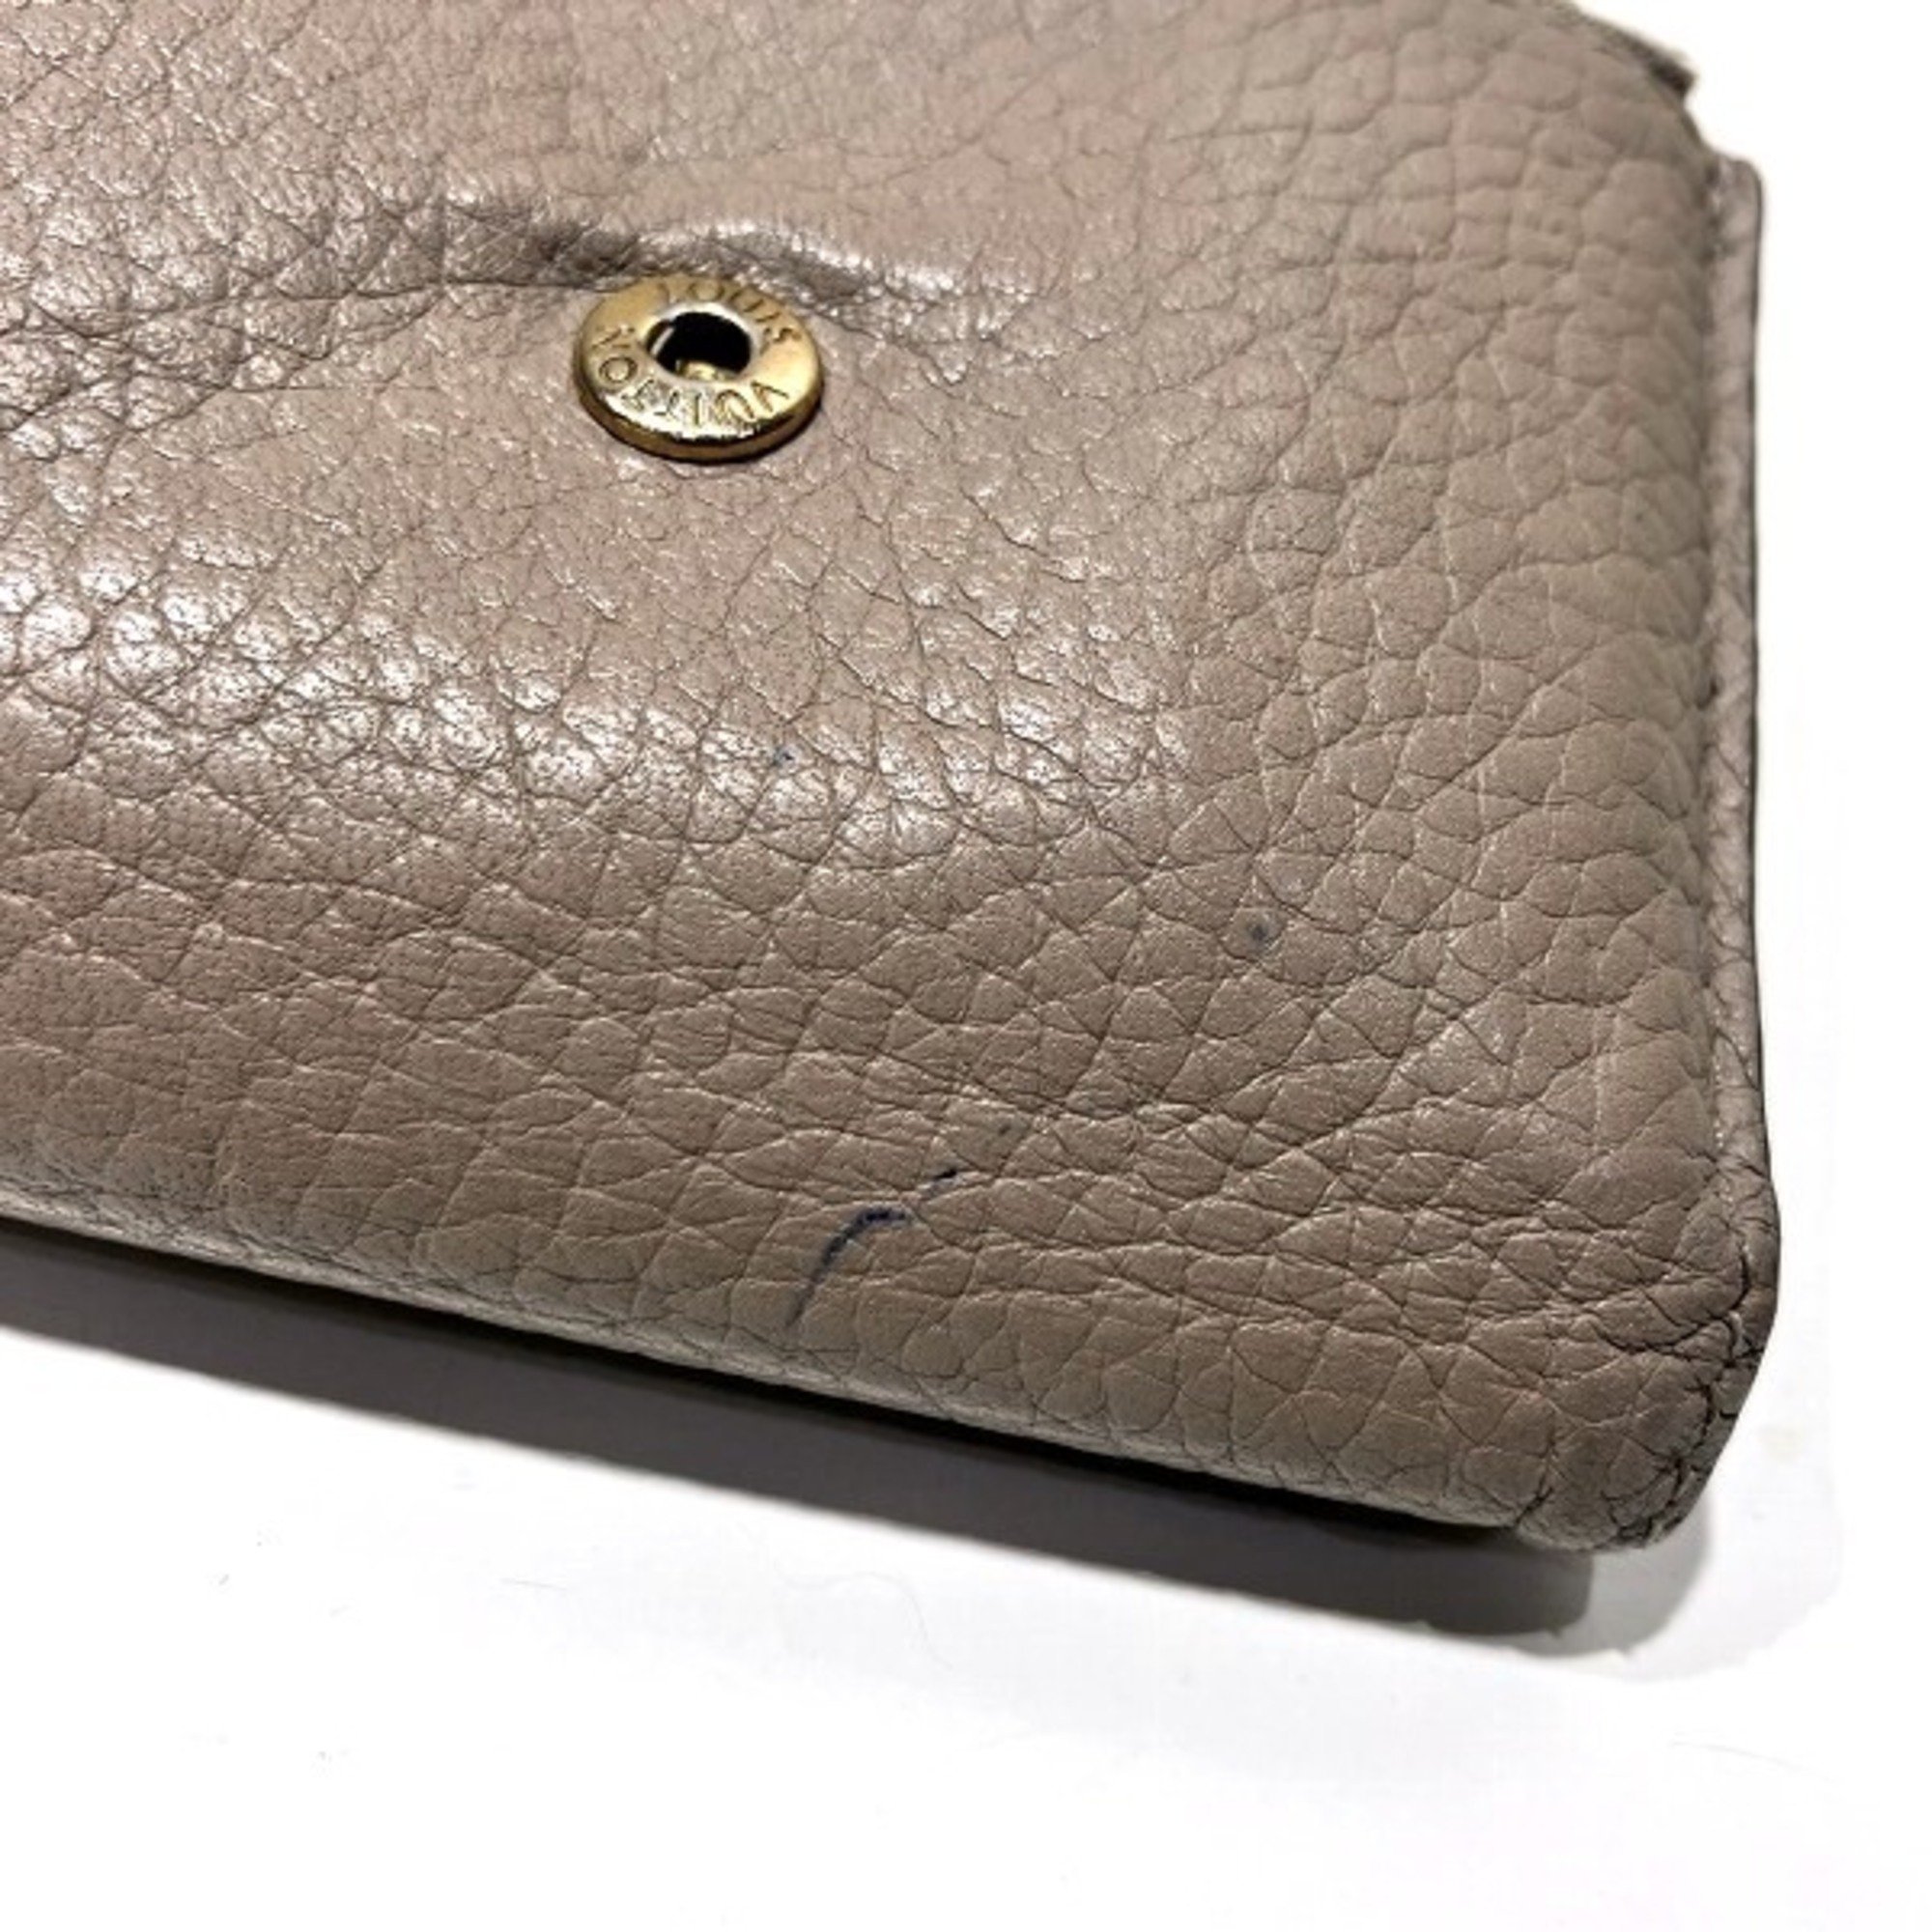 Louis Vuitton Portefeuille Capucines XS M68747 Trifold Wallet Women's